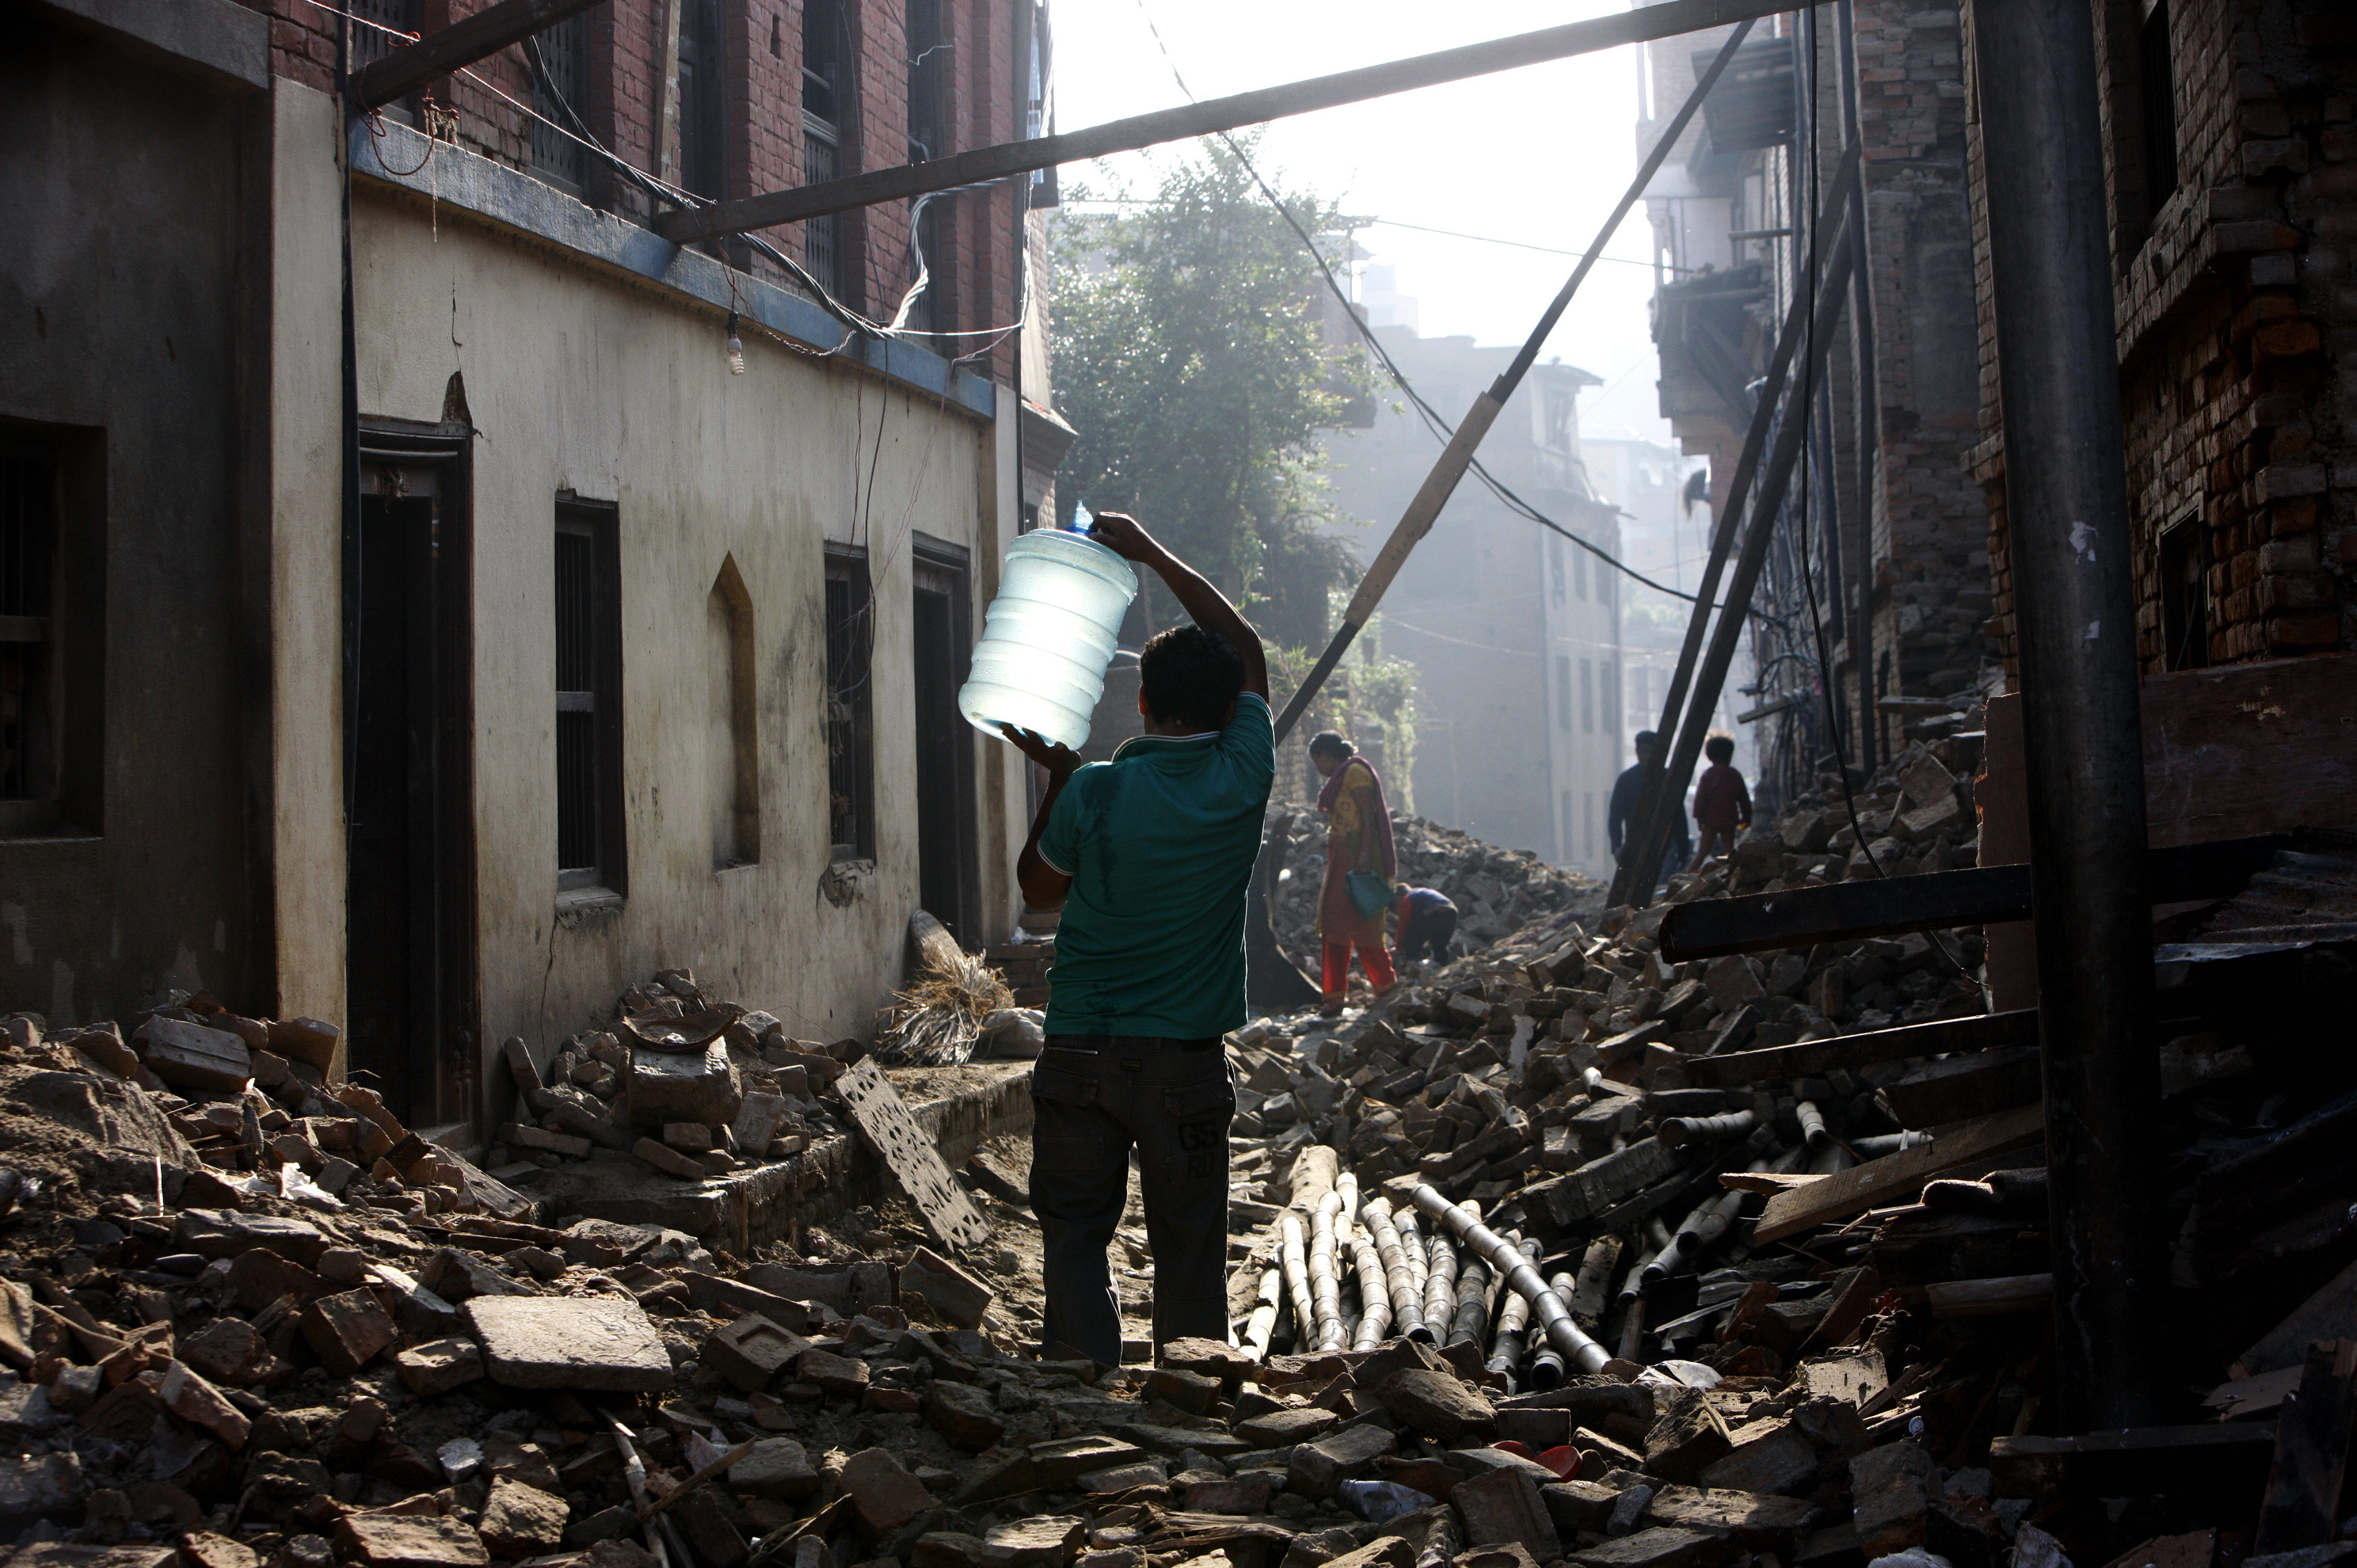 Una calle llena de escombros tras el terremoto en Nepal en 2015